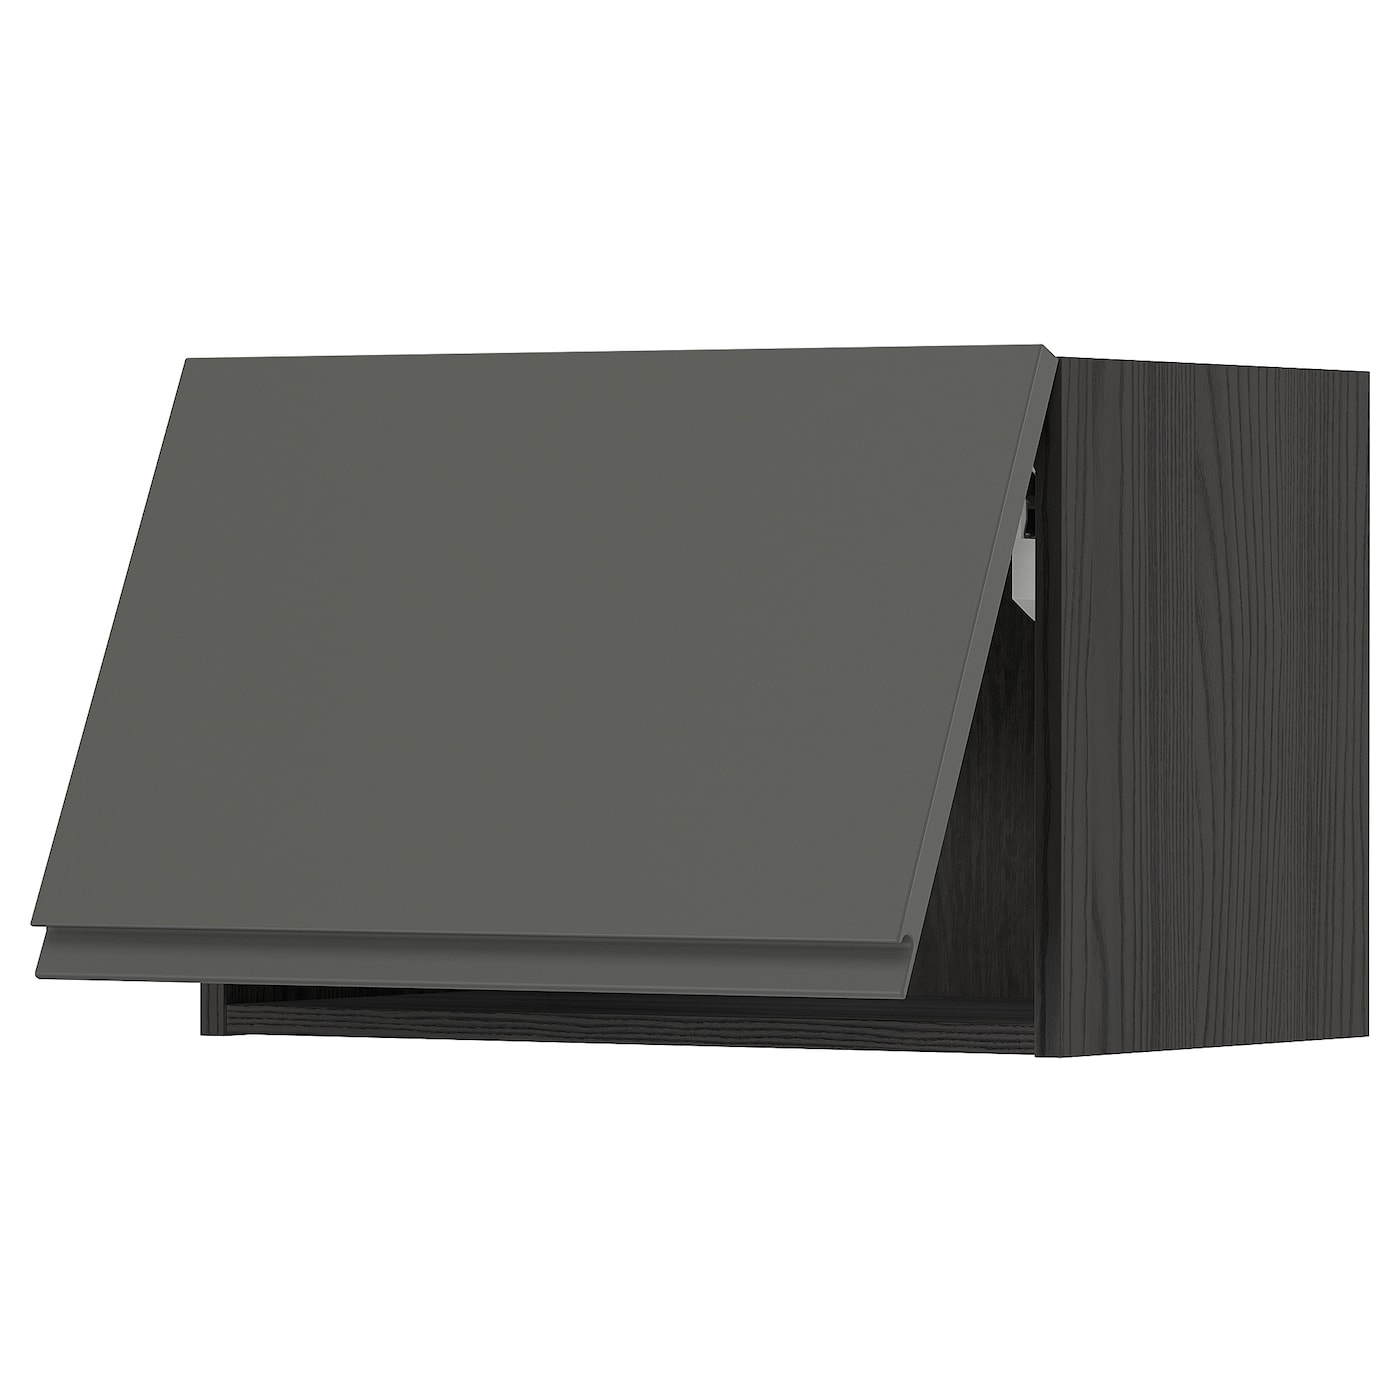 Навесной шкаф - METOD IKEA/ МЕТОД ИКЕА, 40х60 см, черный